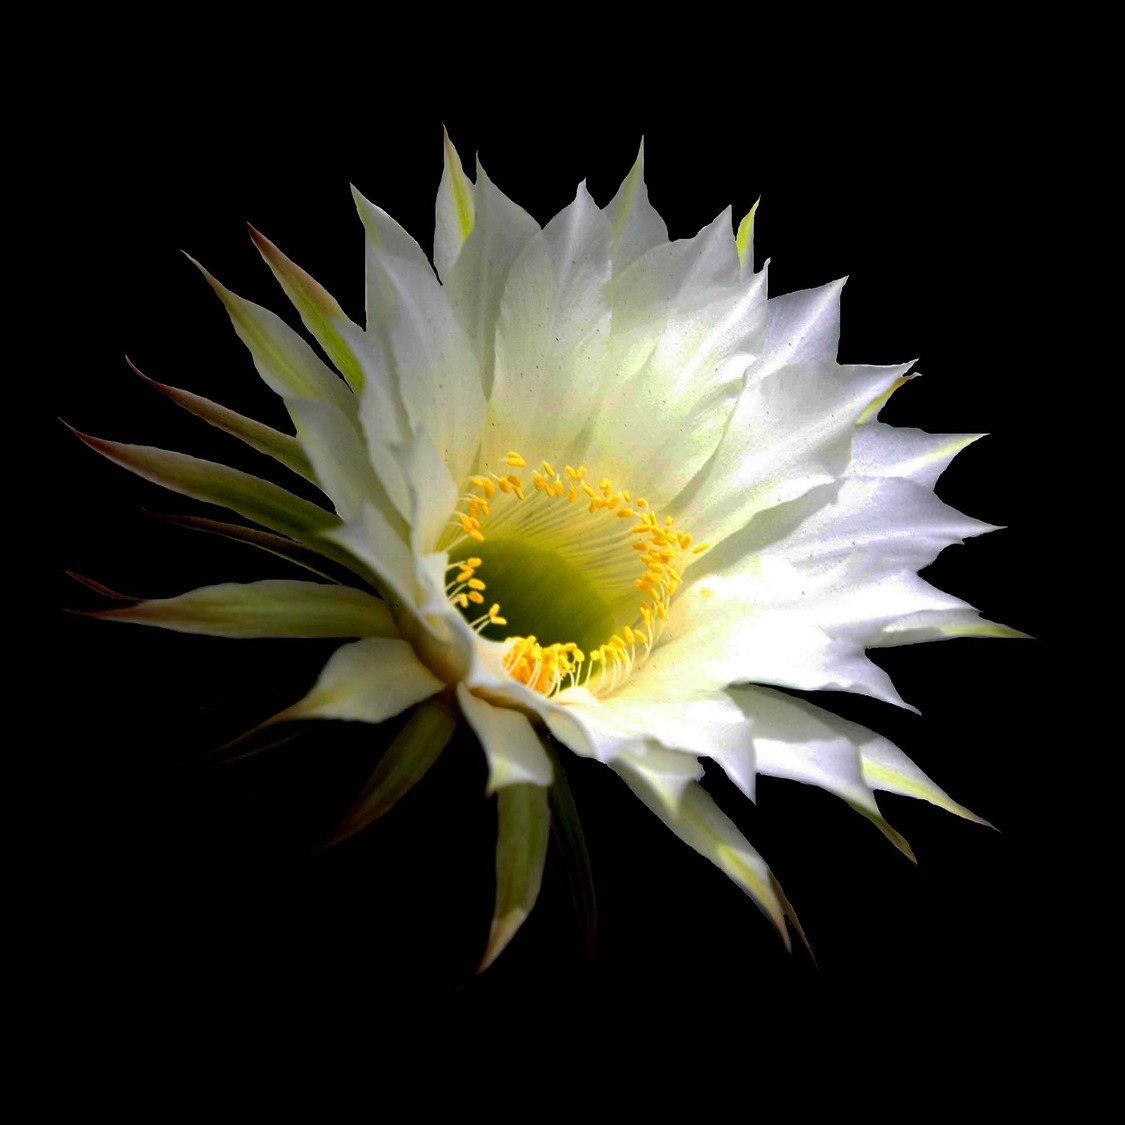 cactus flower illuminated